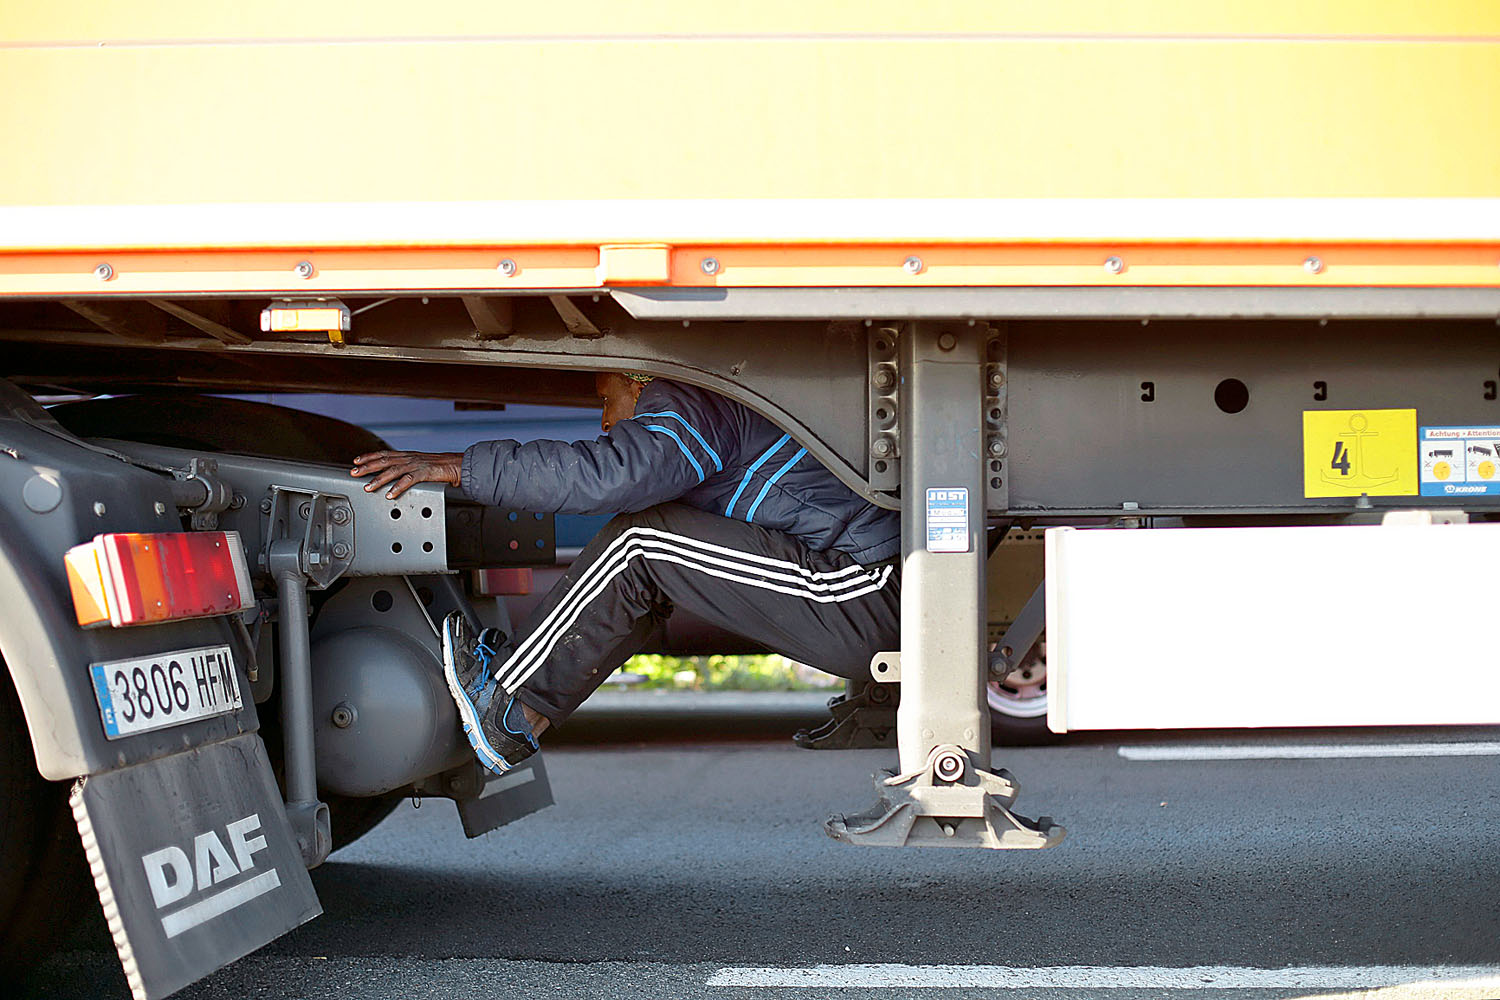 Menekült rejtőzik egy kamion pótkocsija alatt Franciaországban, a Calais kikötőjébe vezető autóúton